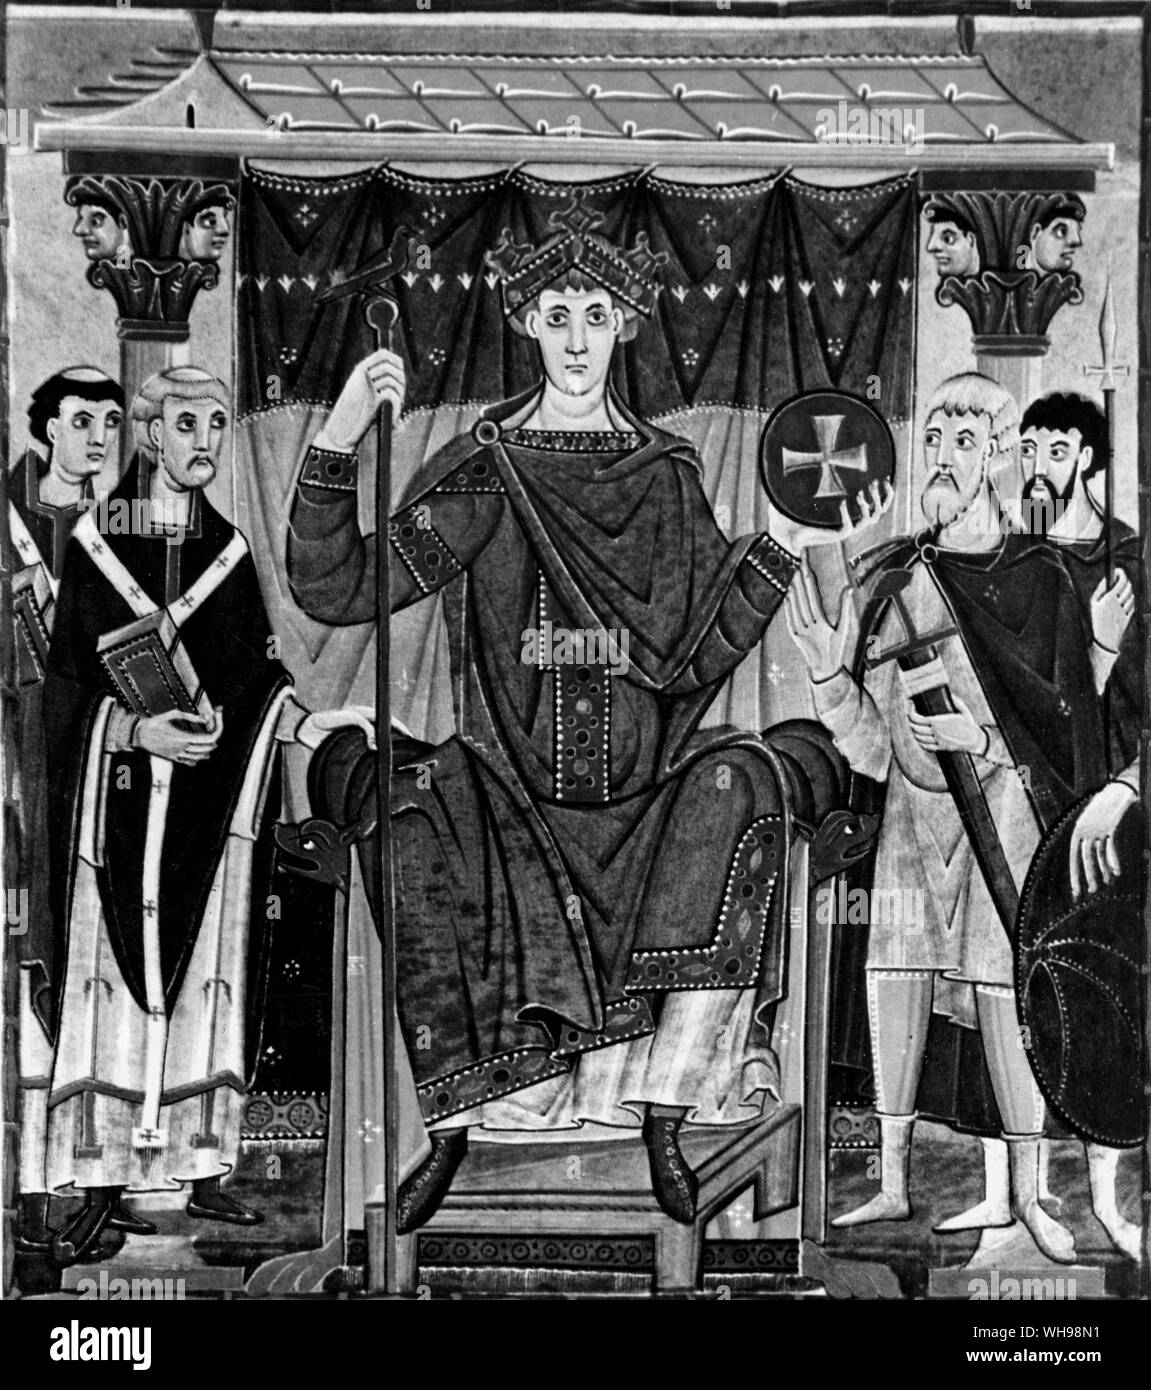 La guerre/Reichenau Évangiles. Otton III avec des dignitaires ecclésiastiques et laïques. c.1000 A.D. Banque D'Images